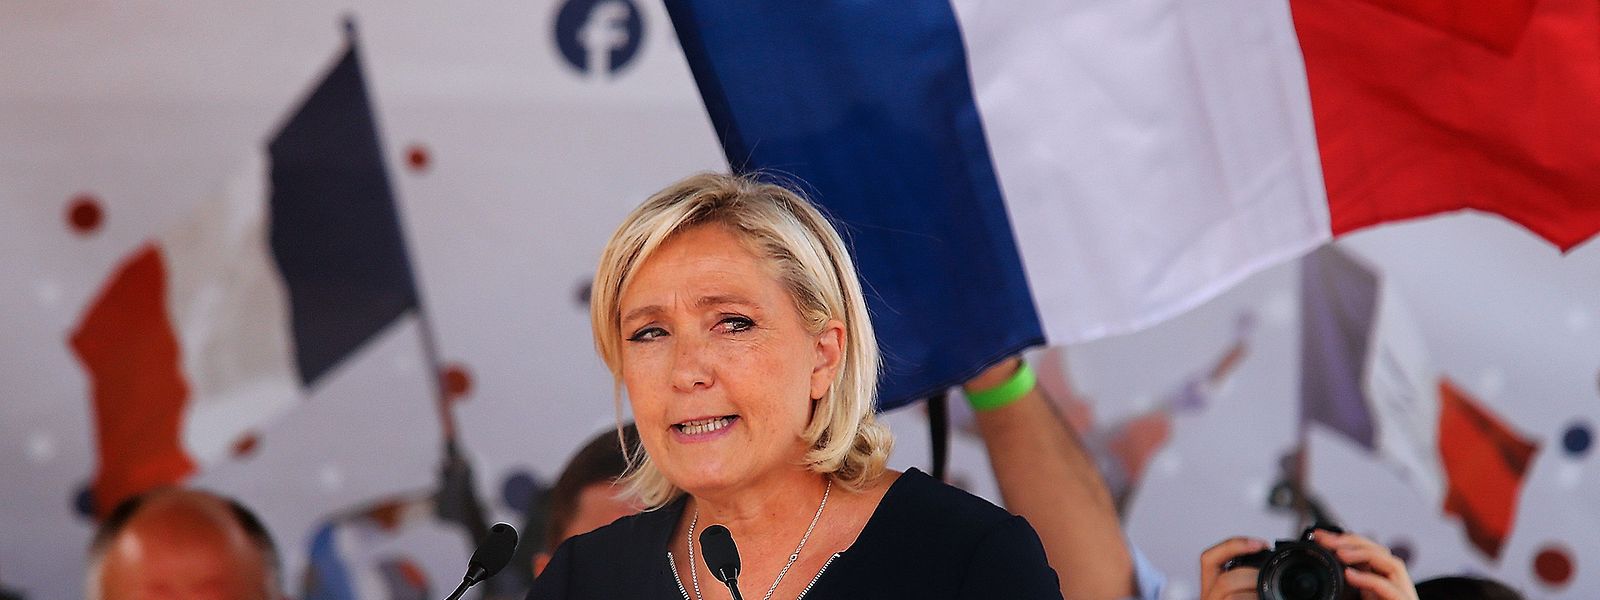 Le Pen bei ihrer Ansprache in Brachay.